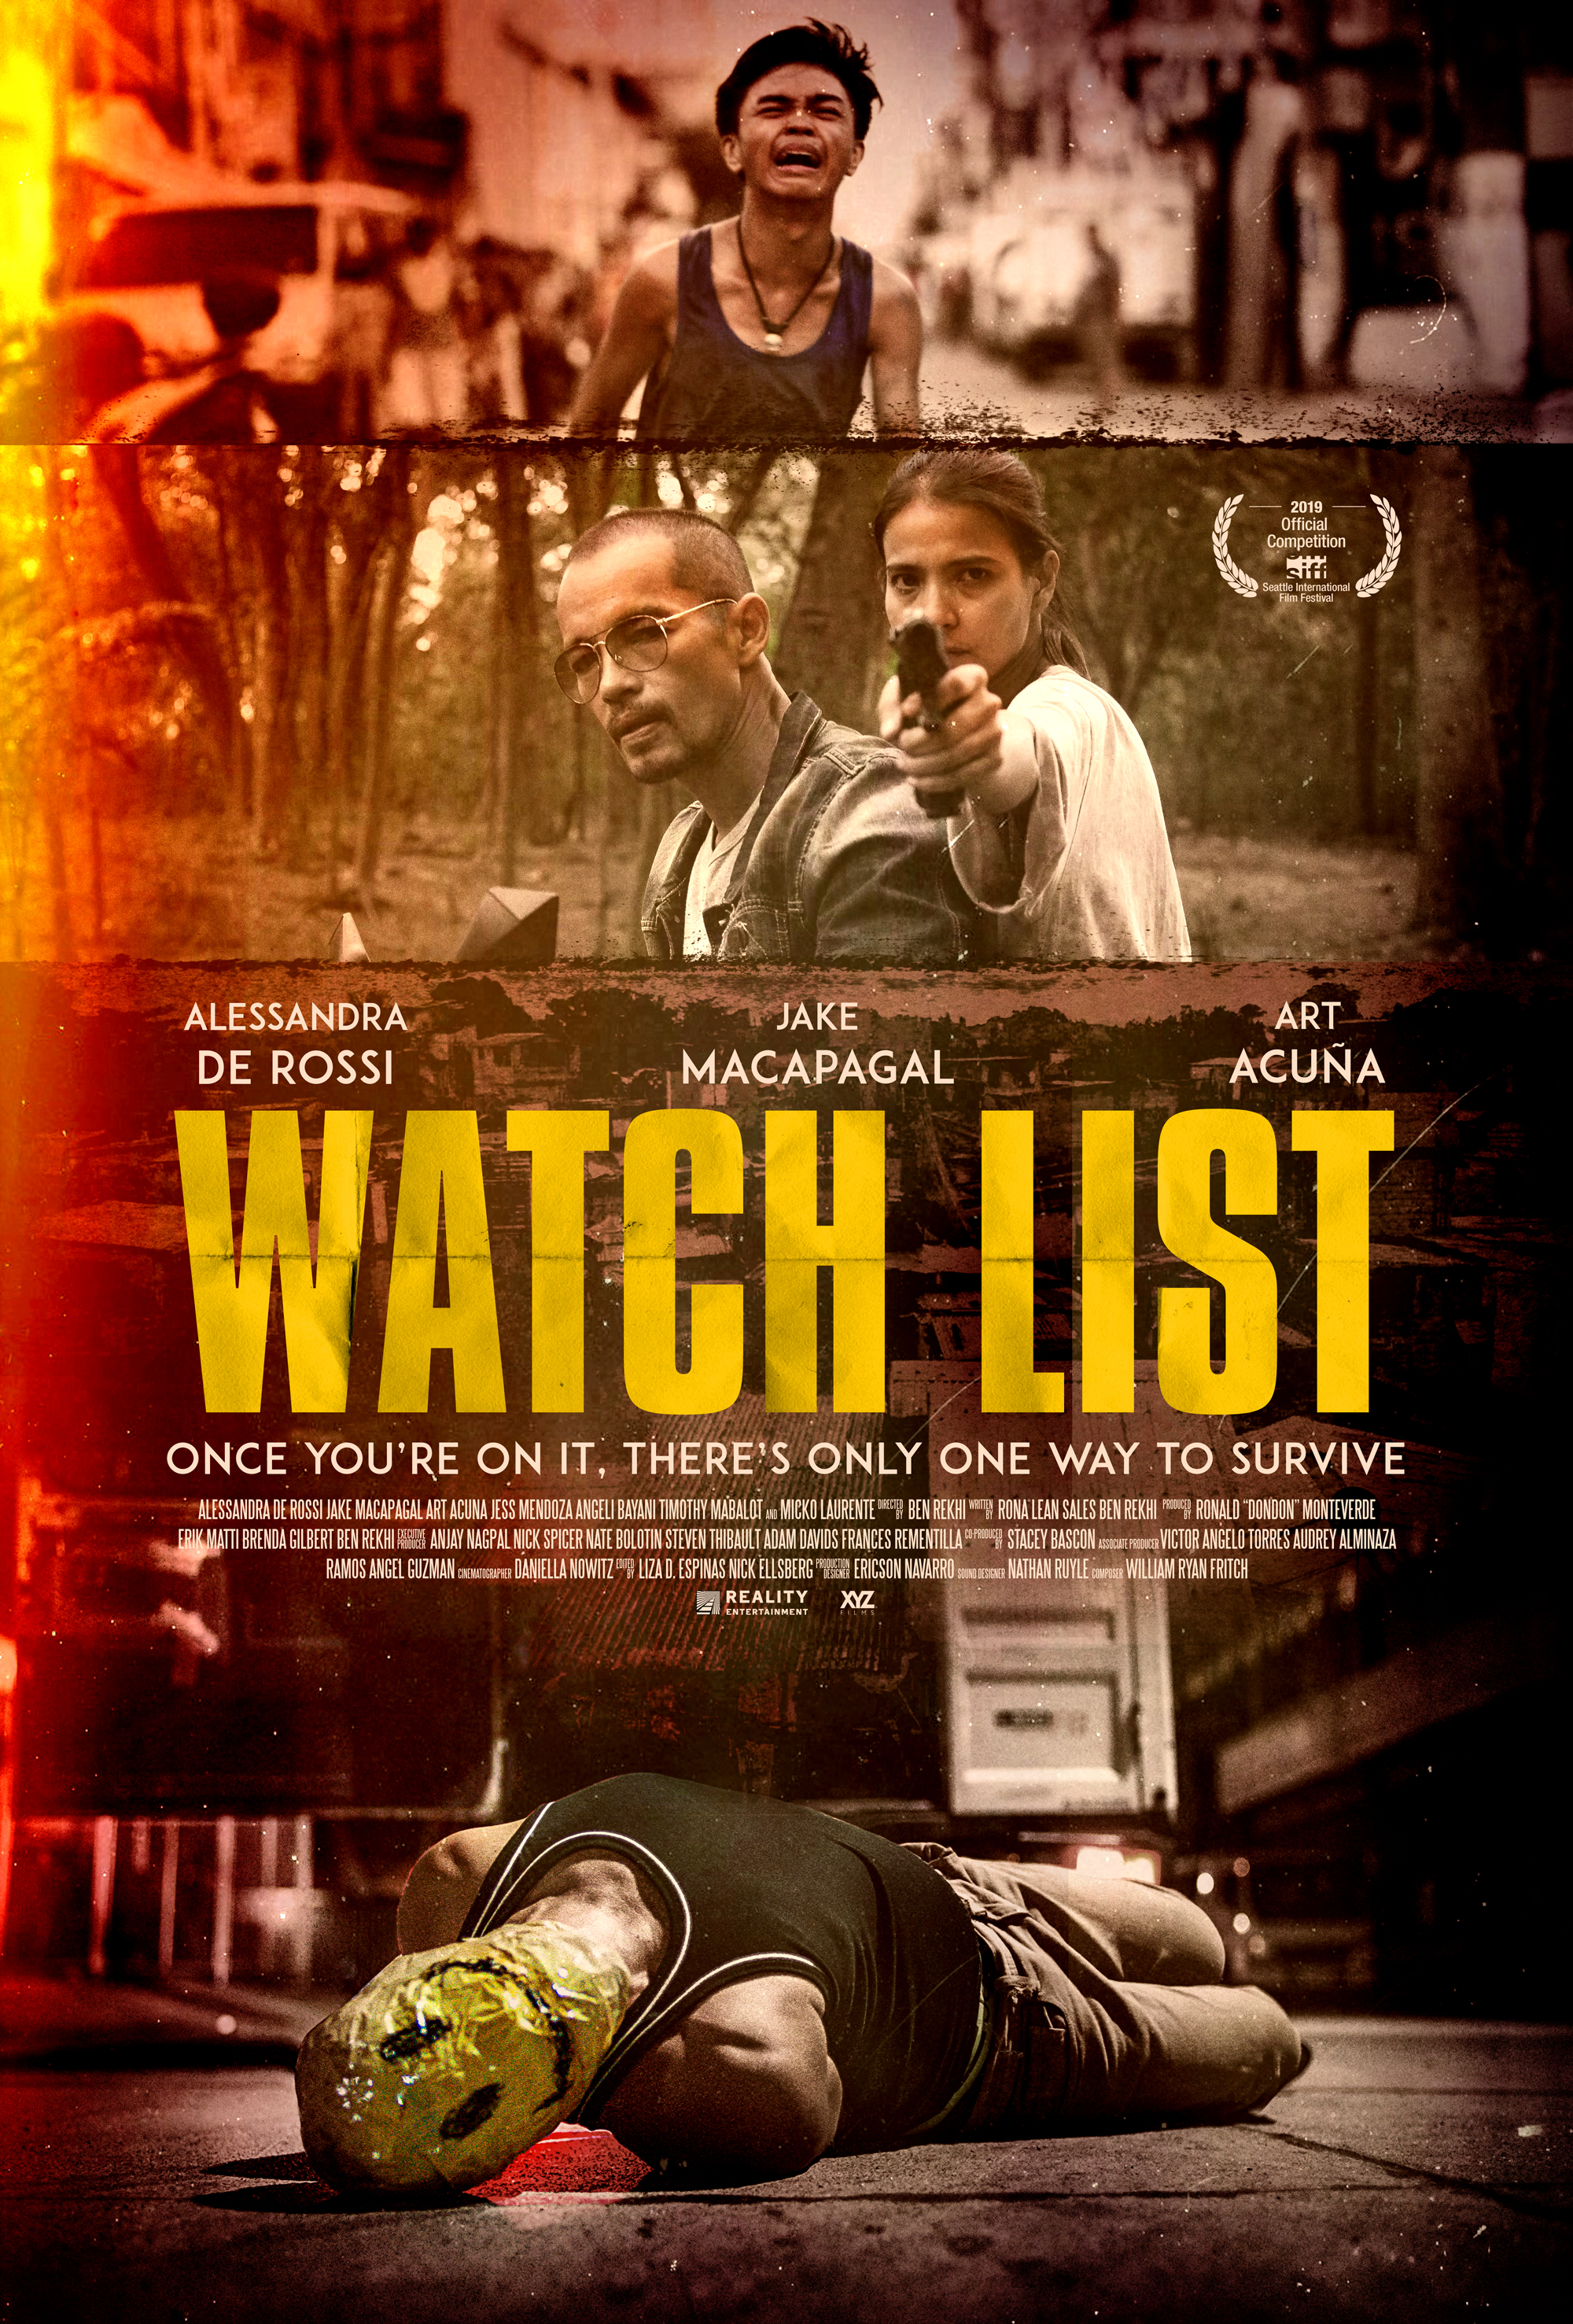 Watch List (USA/Philippines)